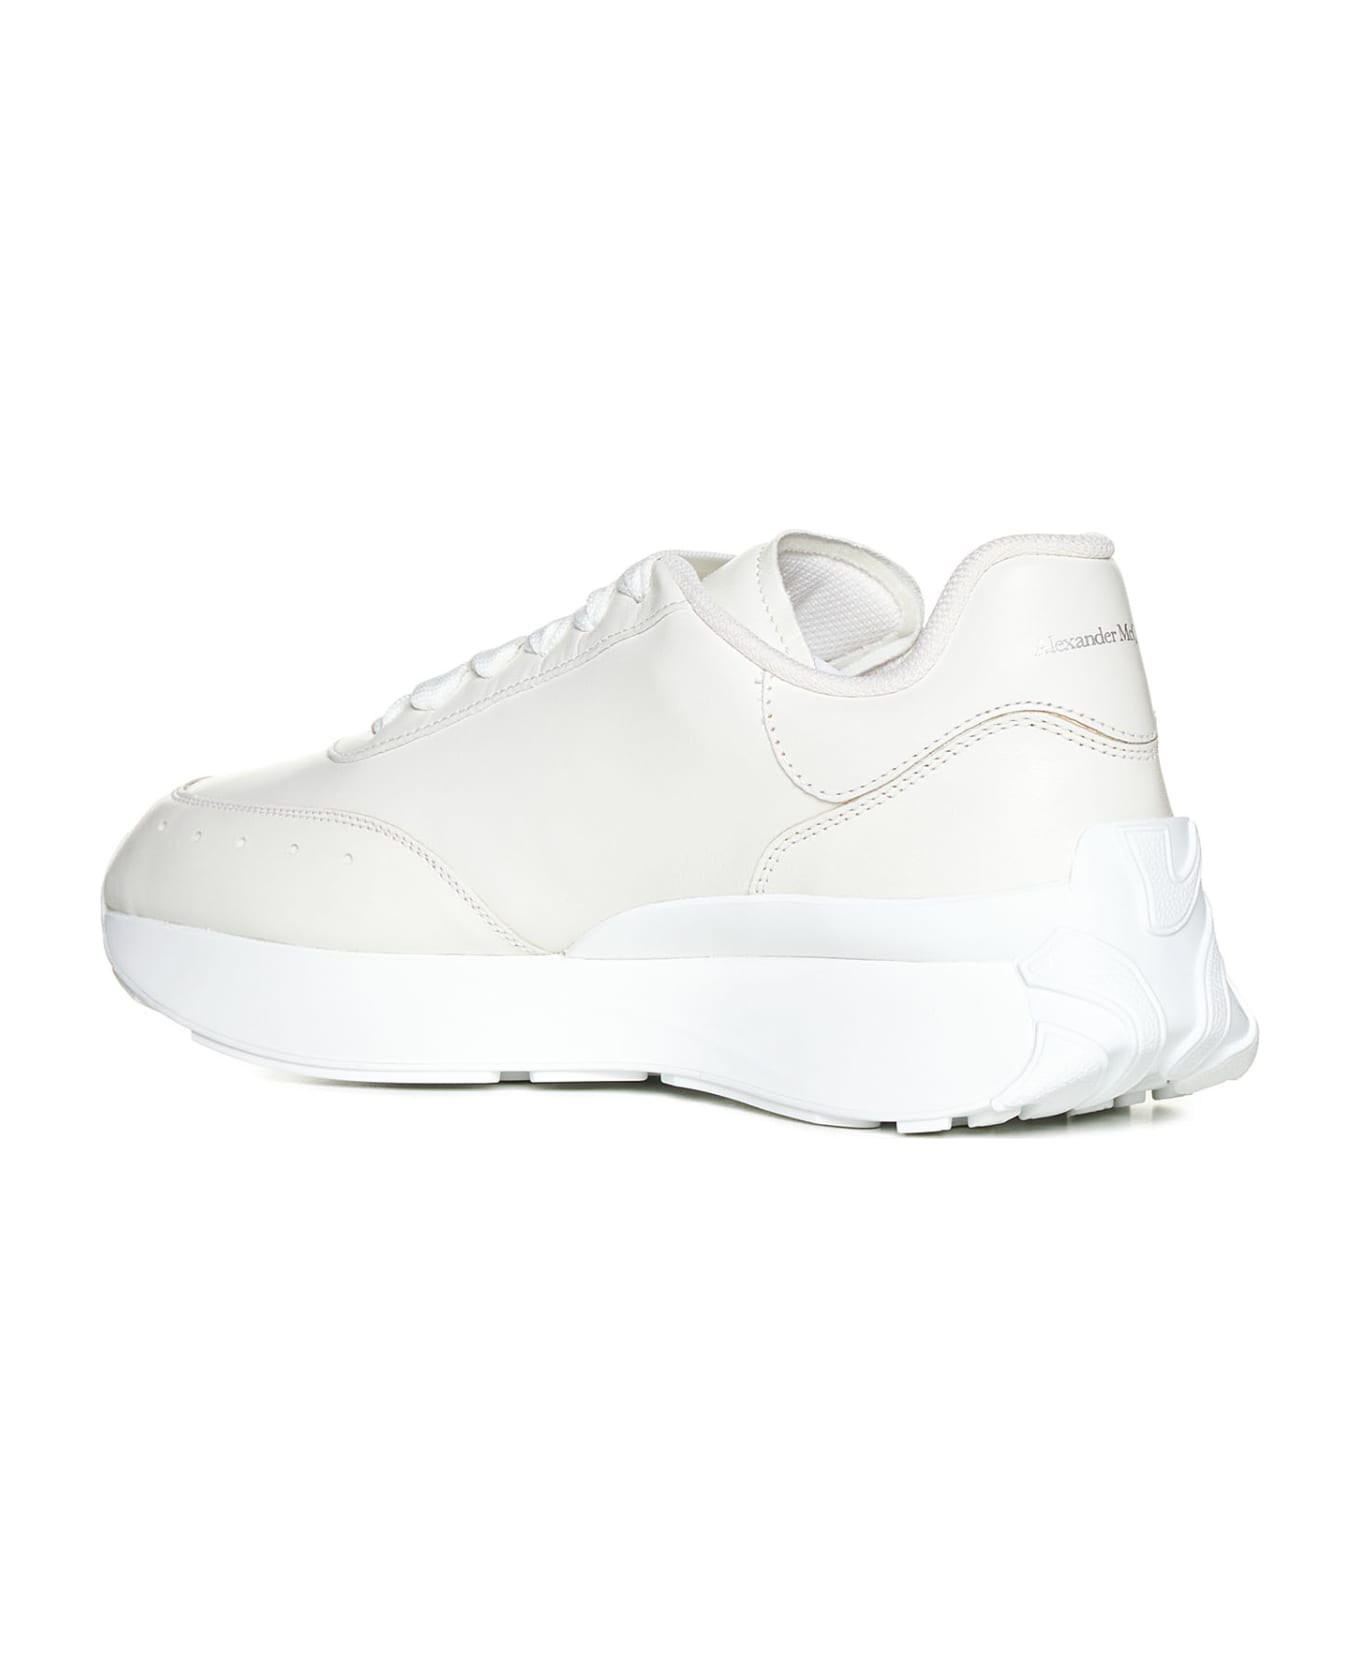 Alexander McQueen Sprint Runner Sneakers - White/white